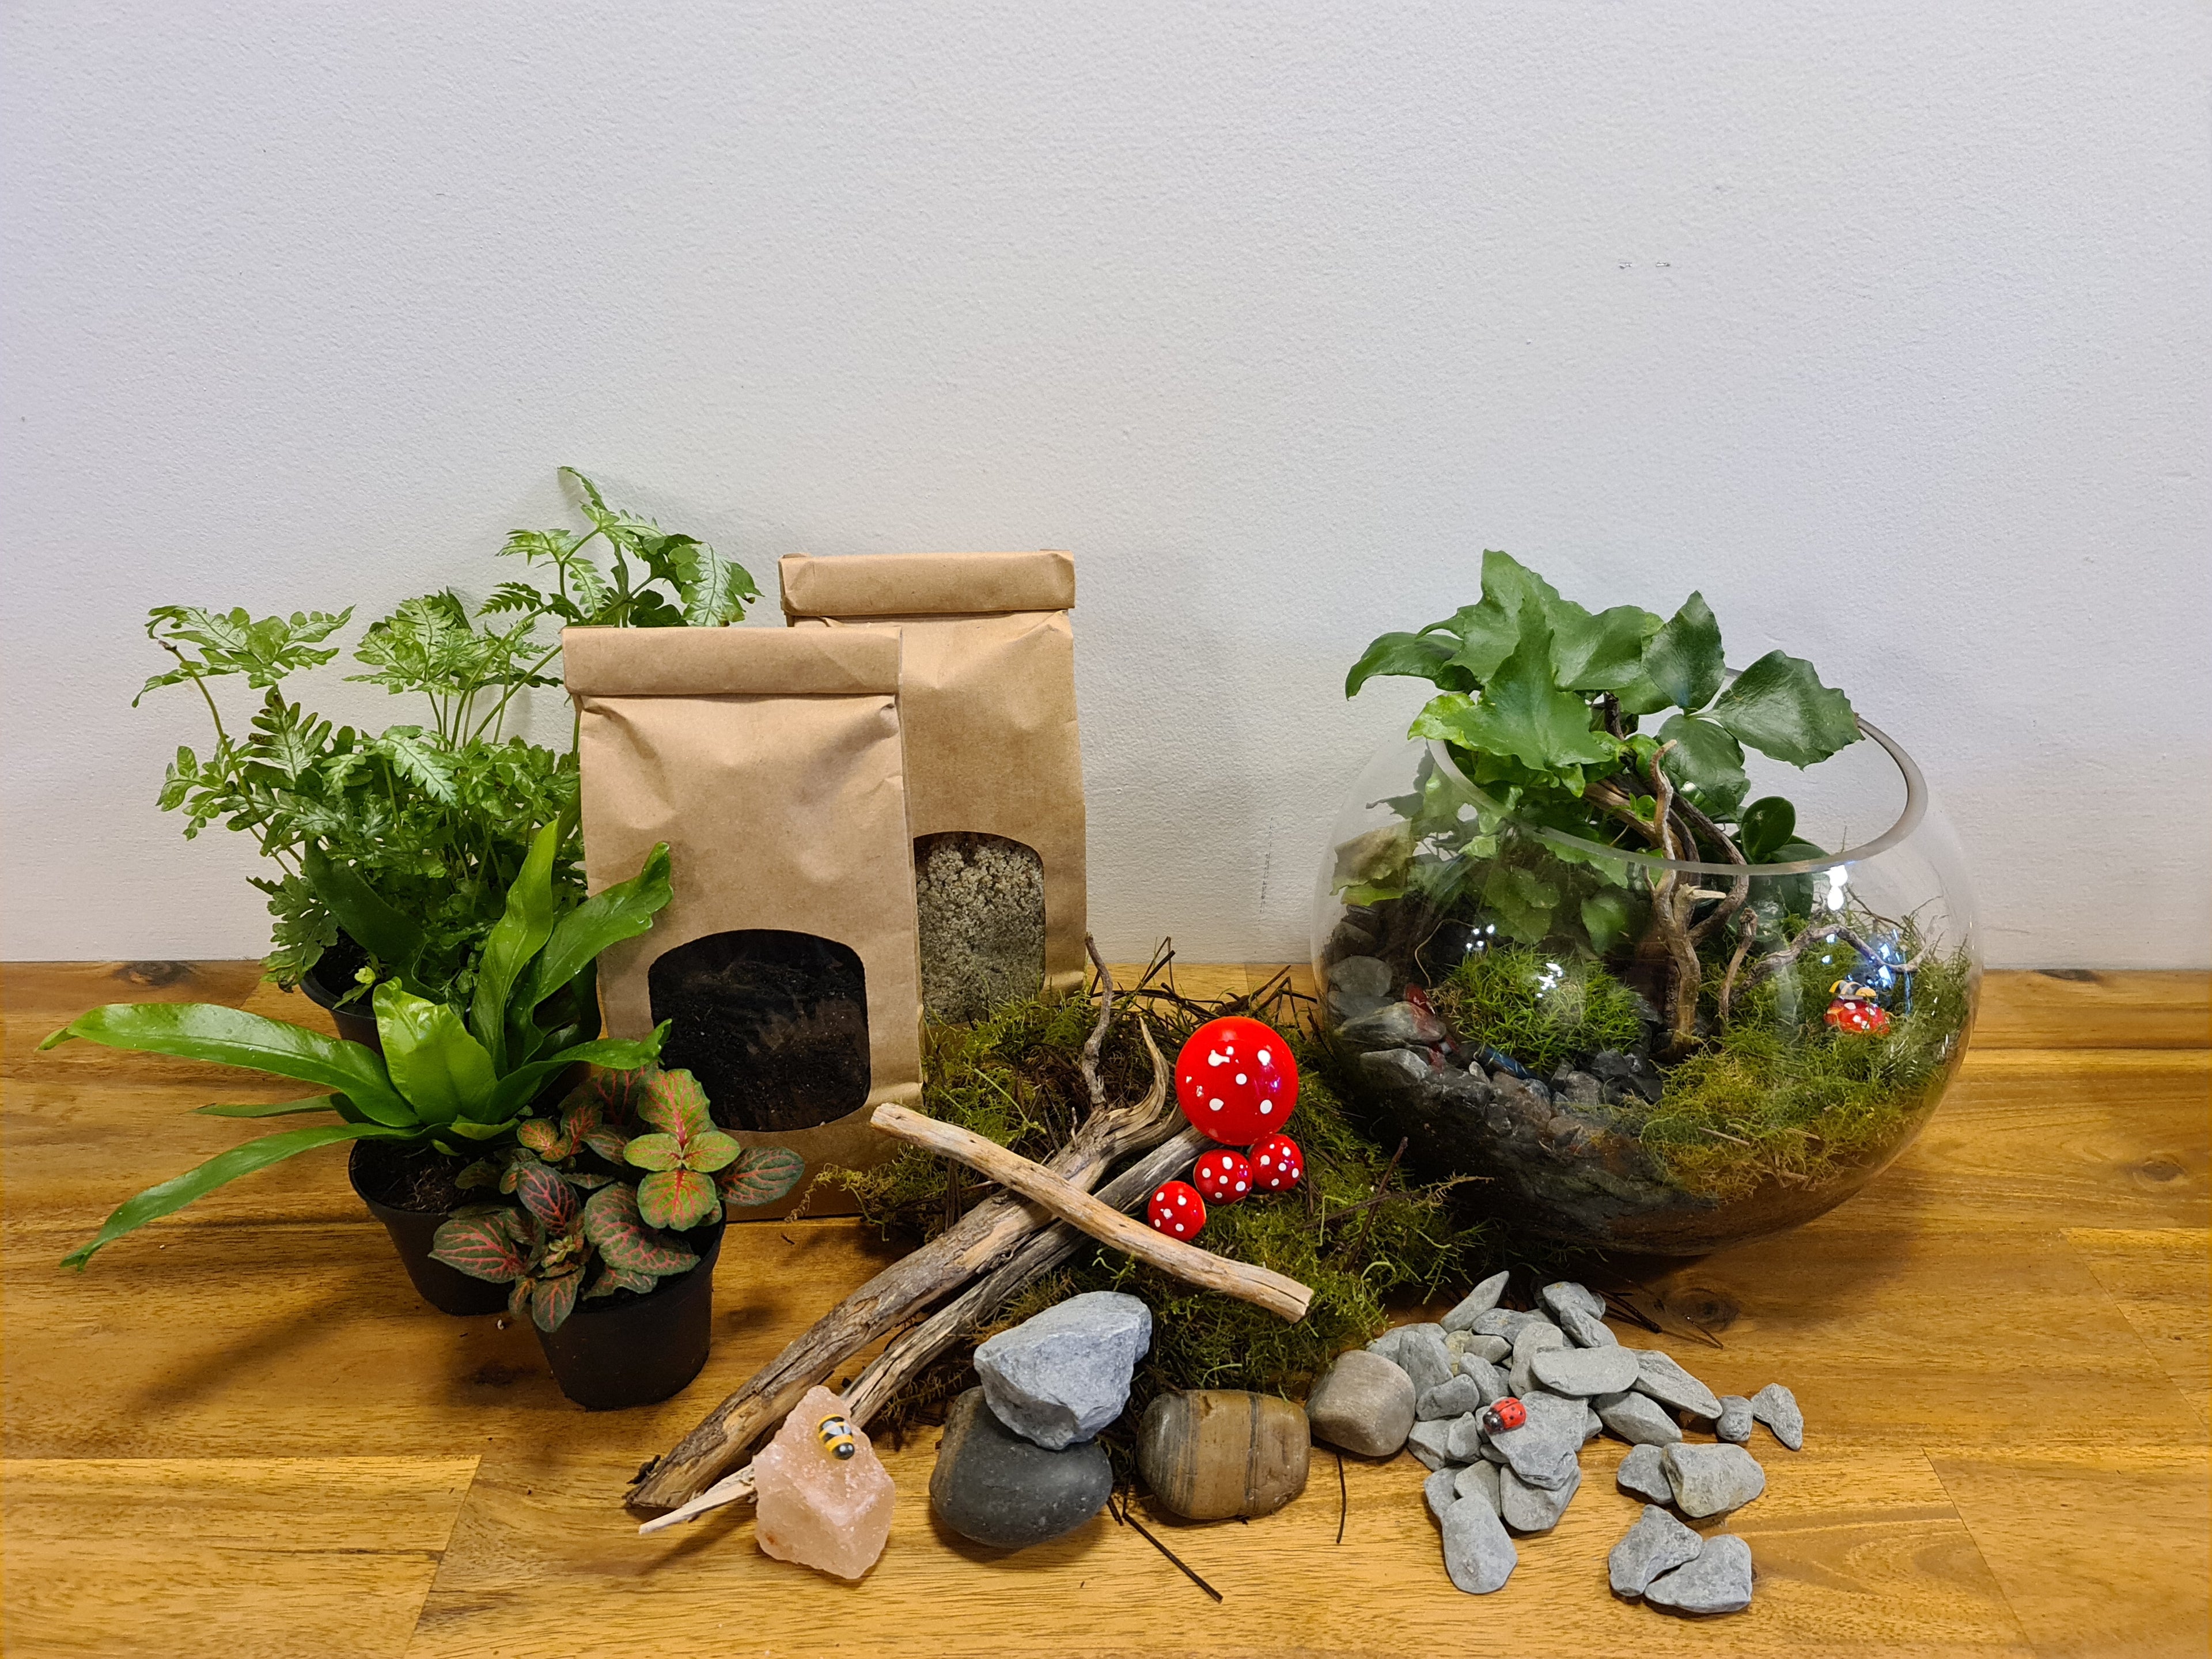 Kit diy pour terrarium 2 plantes